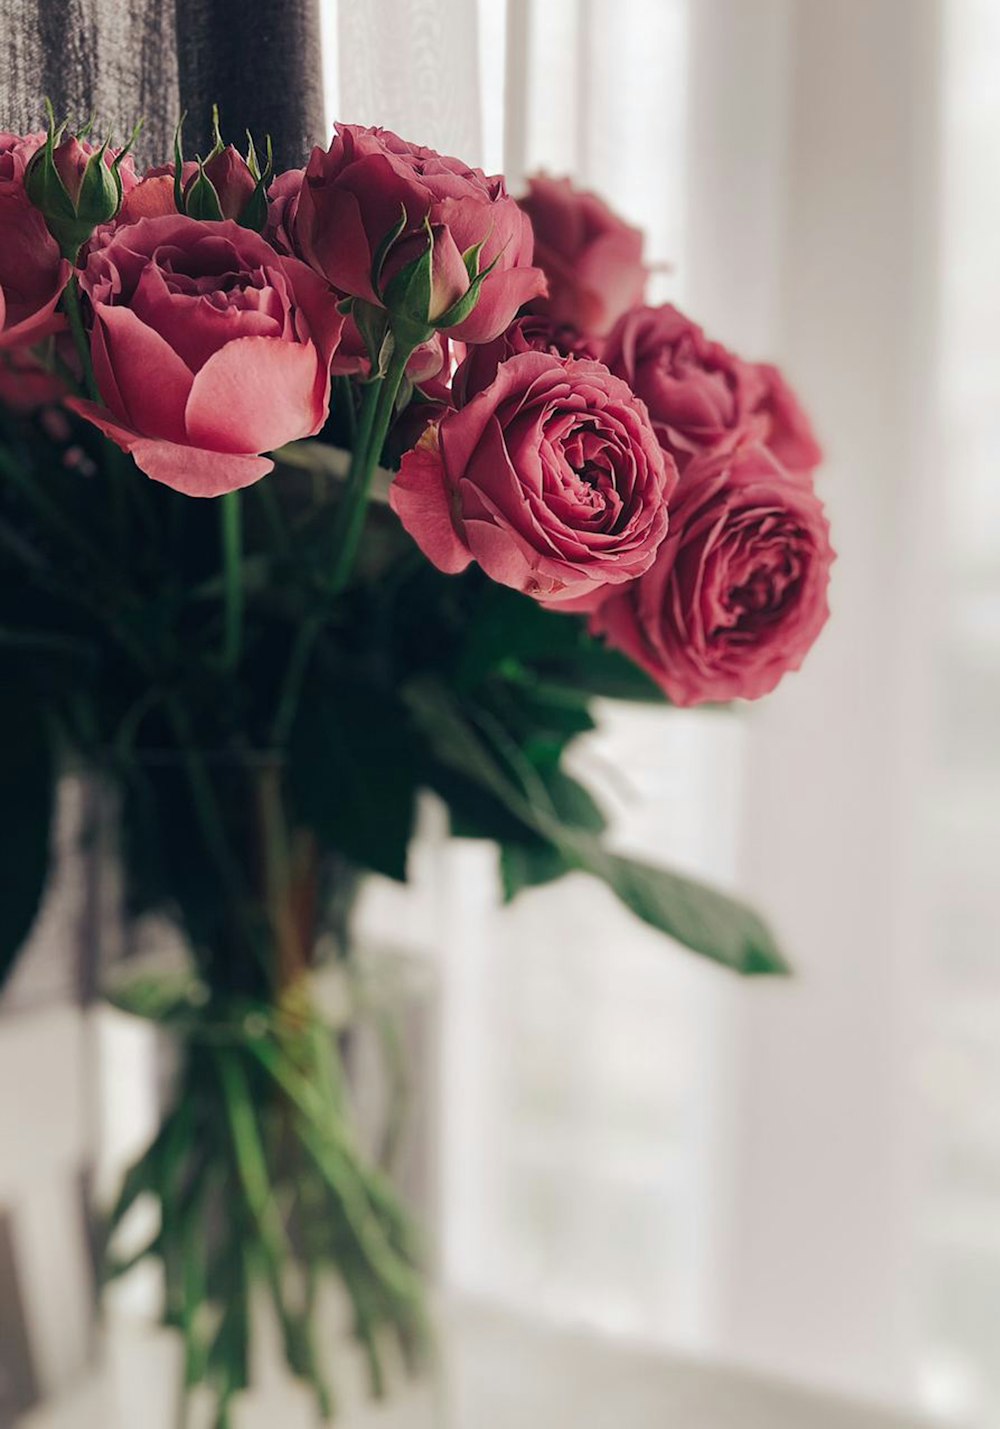 Pink roses in tilt shift lens photo – Free Flower Image on Unsplash